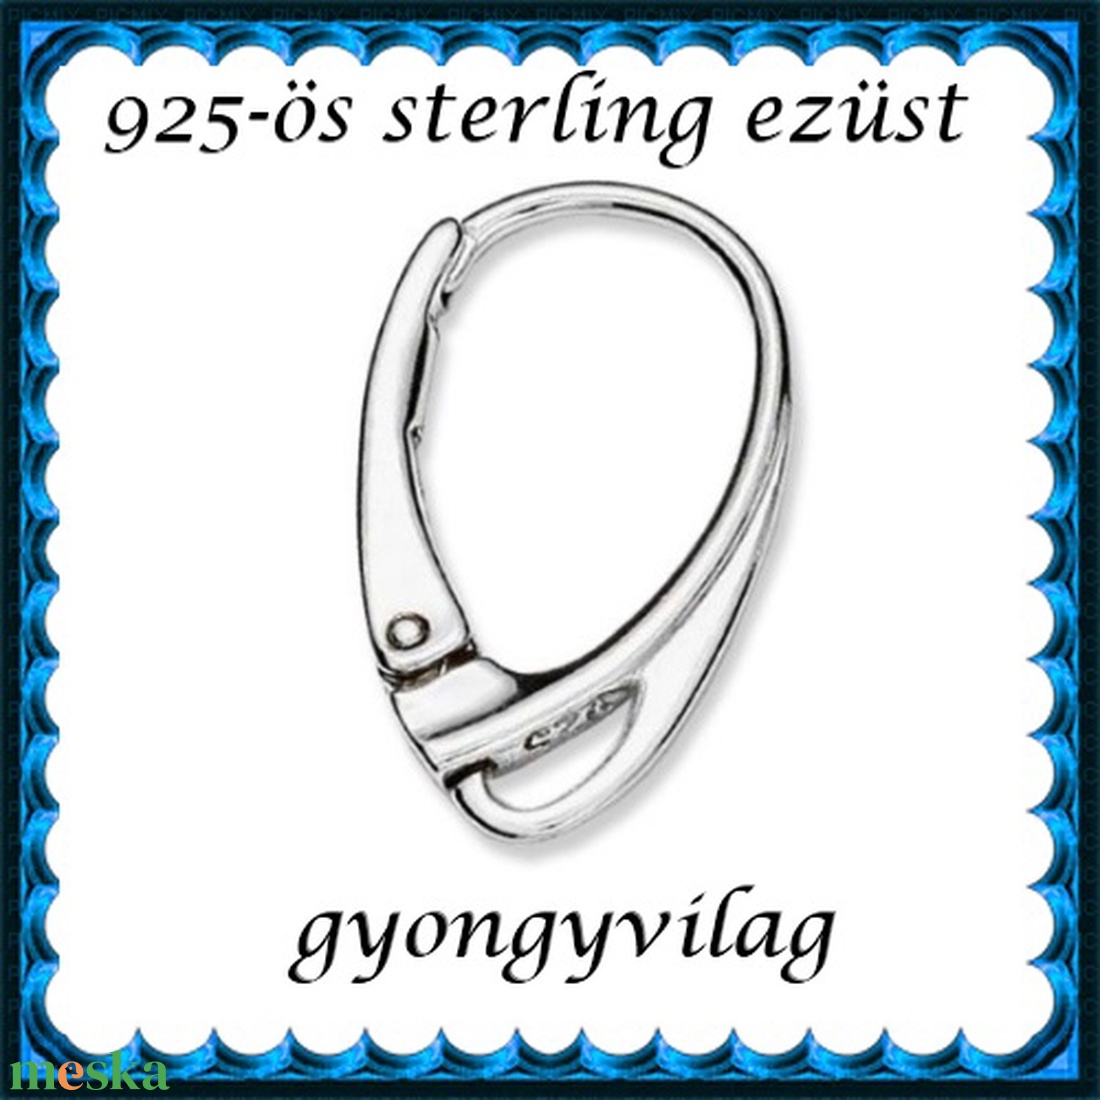 925-ös sterling ezüst ékszerkellék: fülbevalóalap biztonsági kapoccsal EFK K 14 - gyöngy, ékszerkellék - egyéb alkatrész - Meska.hu